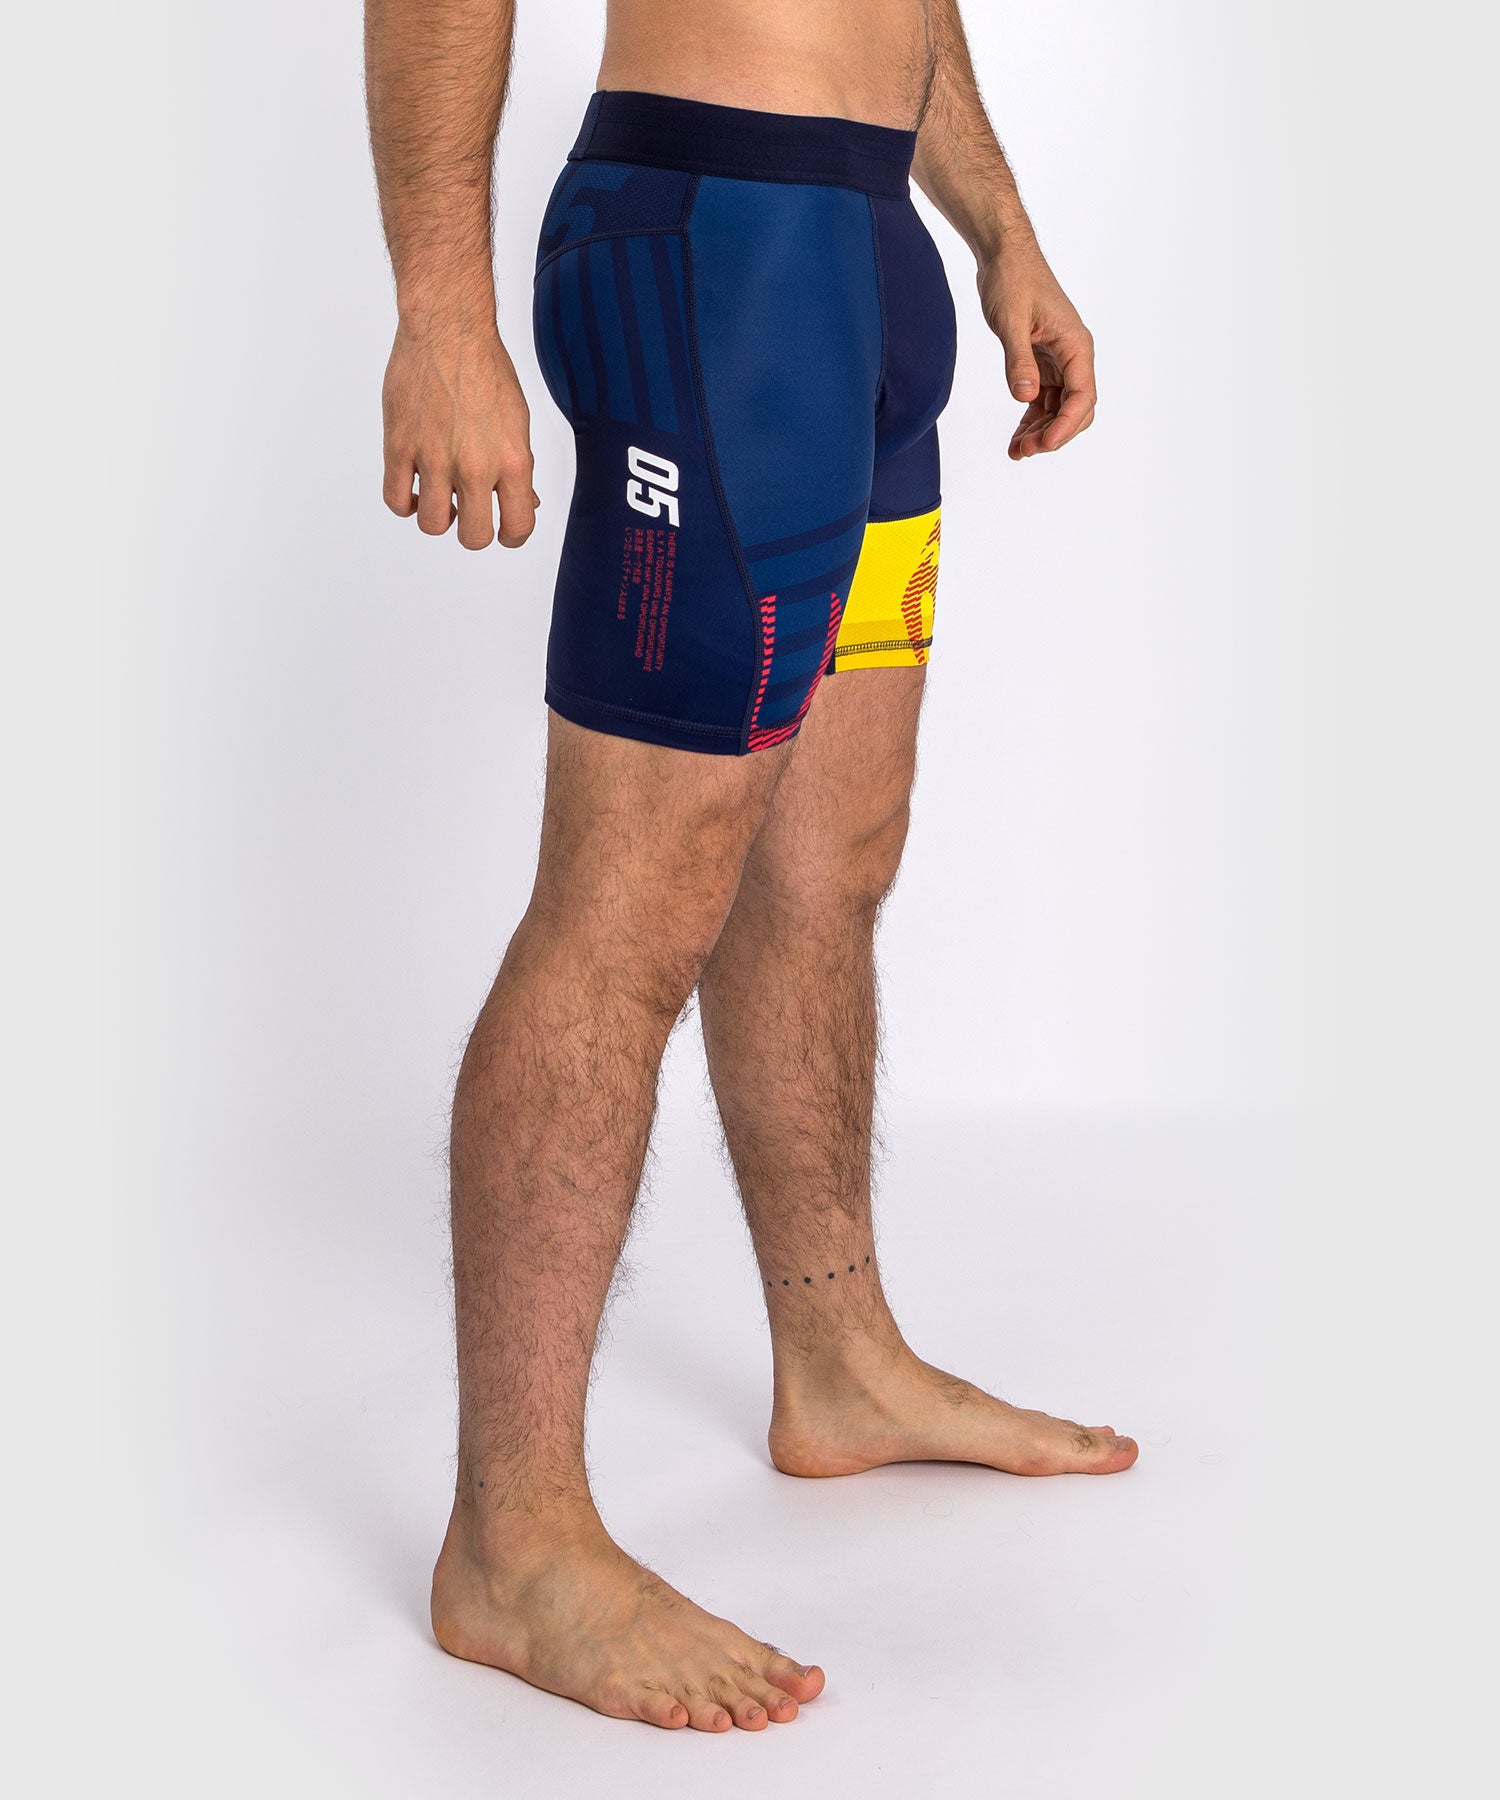 Vale Tudo Shorts Venum Sport 05 - Bleu/Jaune - Shorts de compression